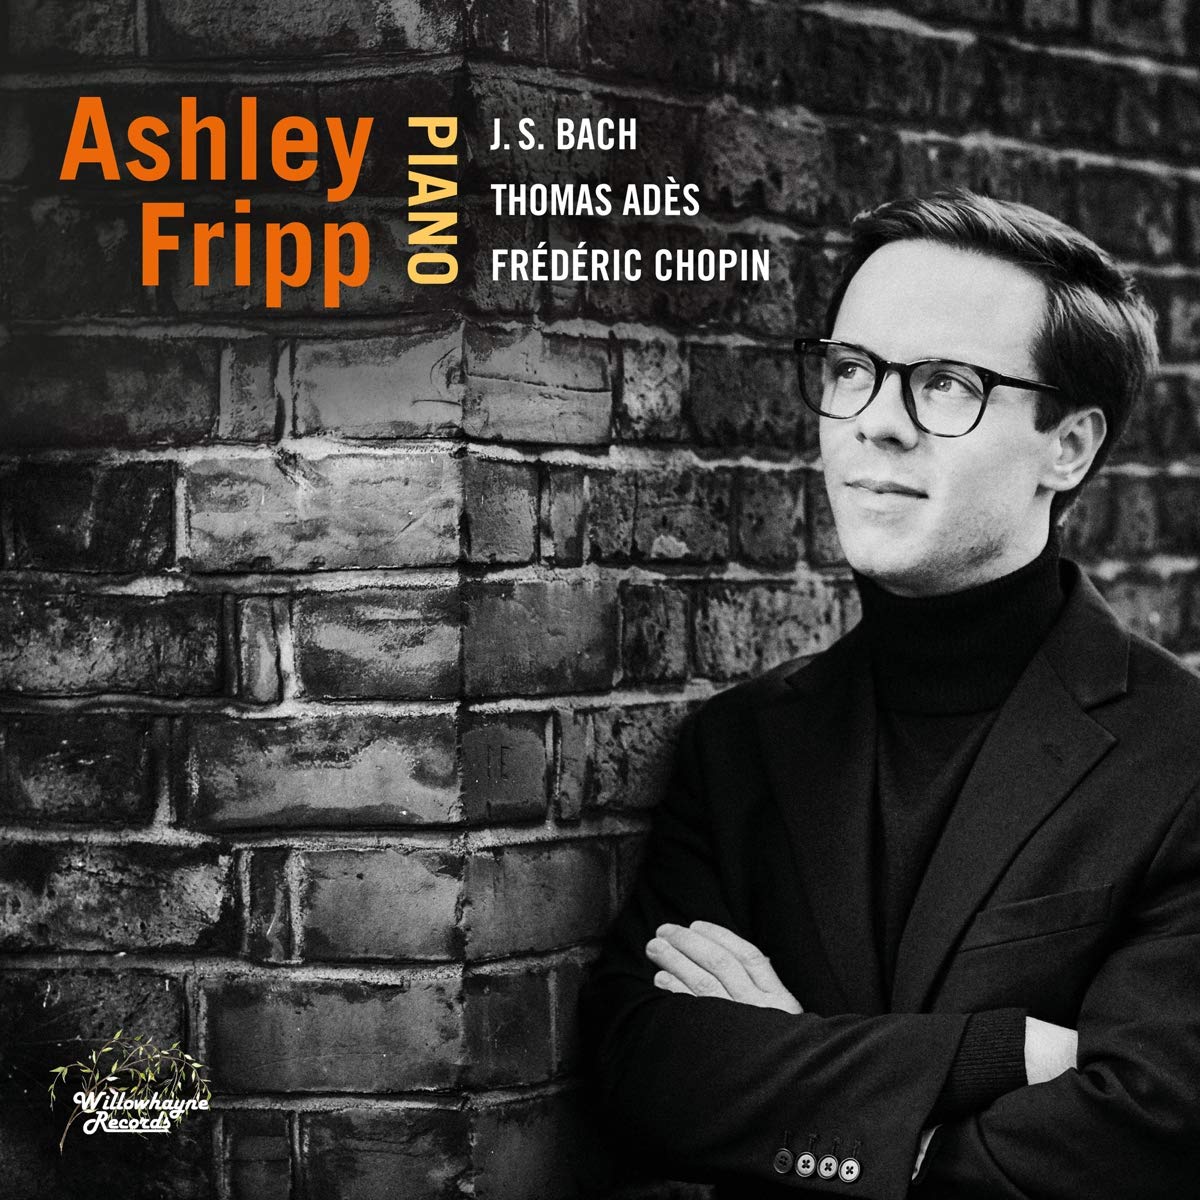 Ashley Fripp